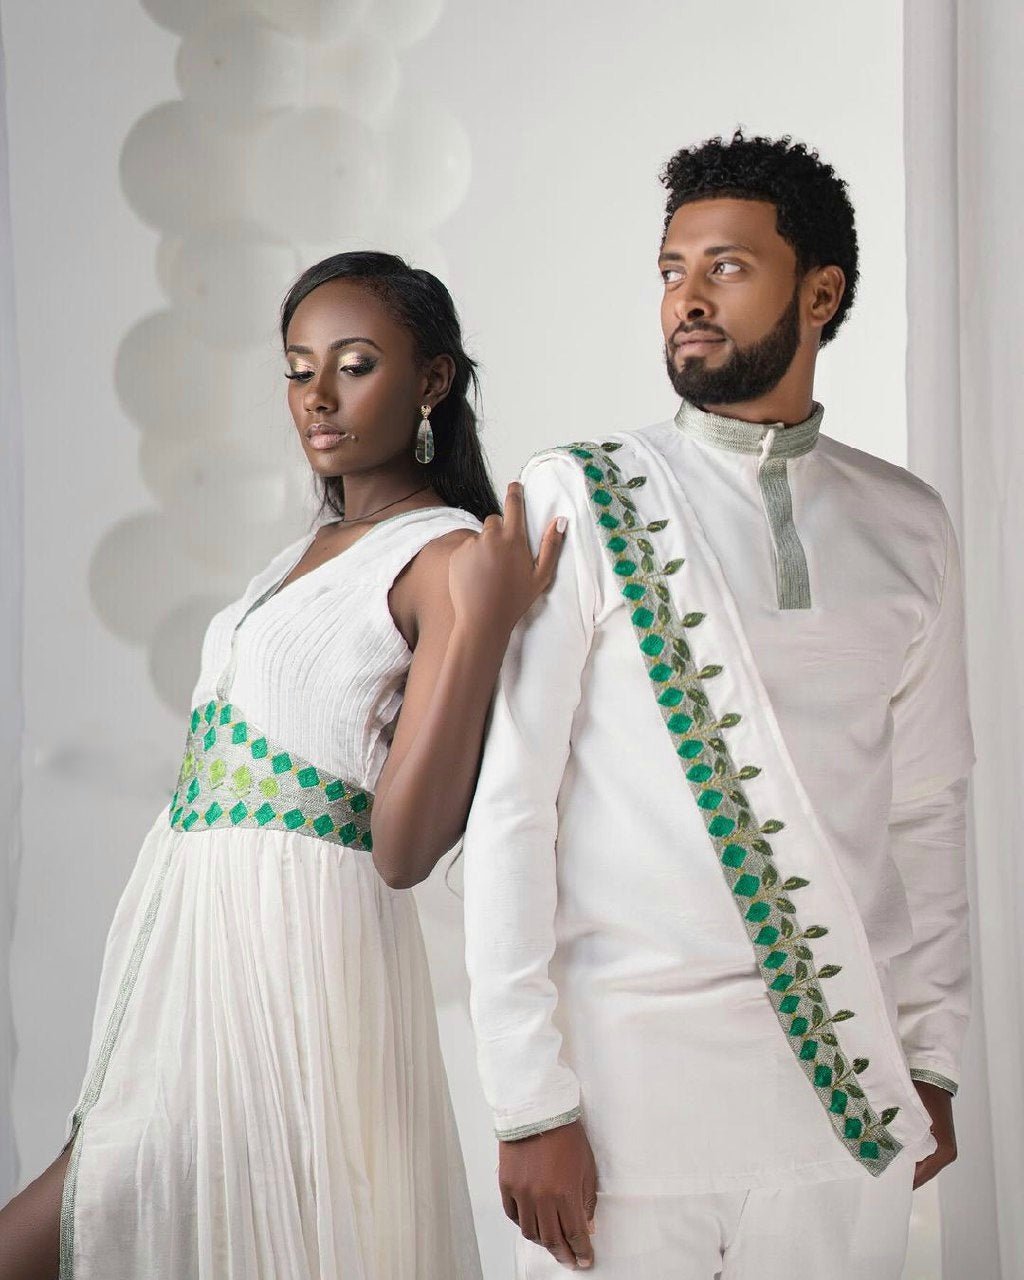 Green Wedding Stylish Habesha Couples Outfit Modern Ethiopian Outfit Matching Couples Outfit